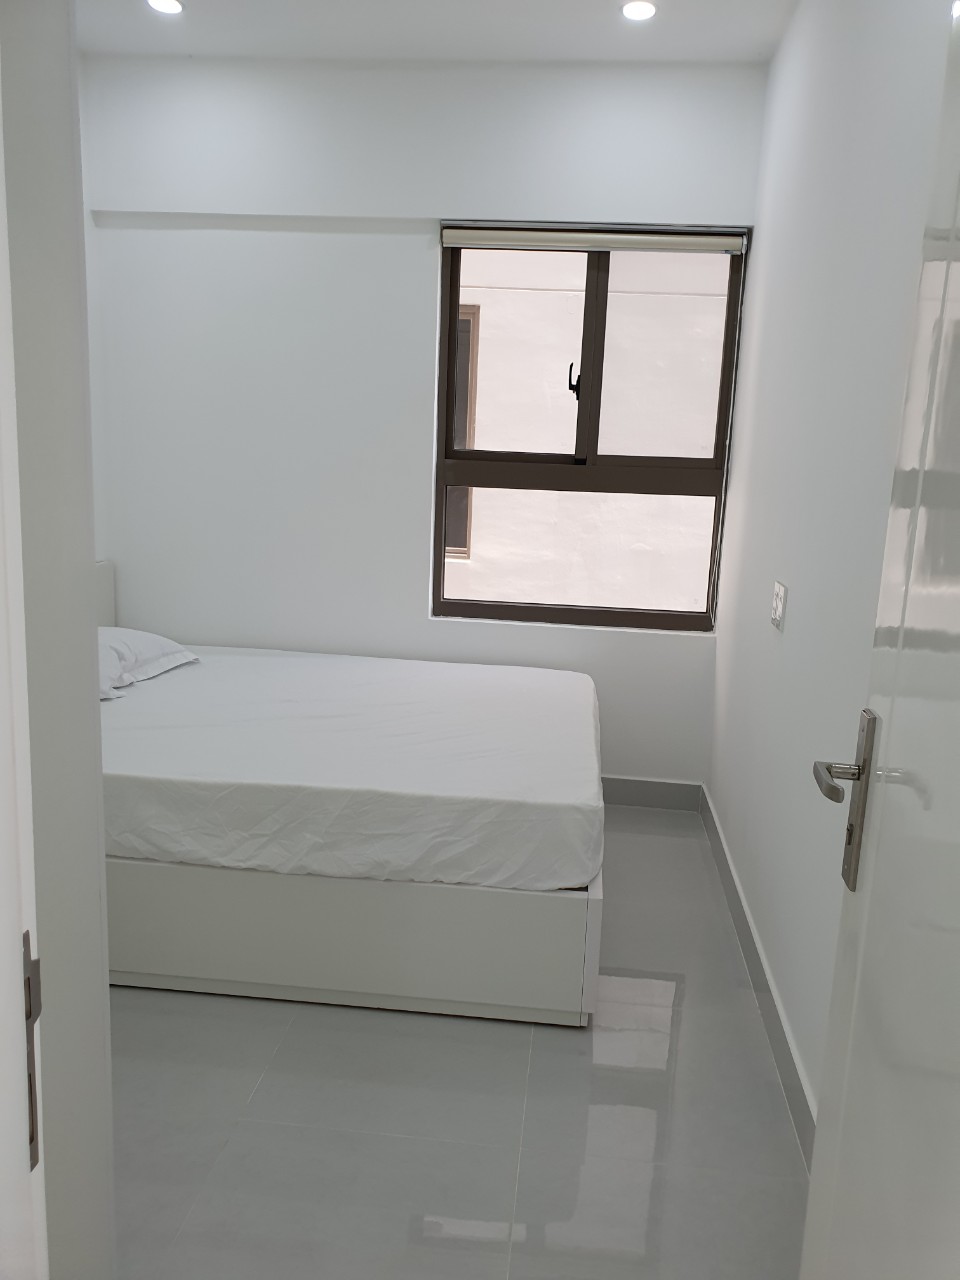 Giá tốt cho thuê căn hộ Saigon South - 71m2 2PN 2WC - full nội thất đẹp.